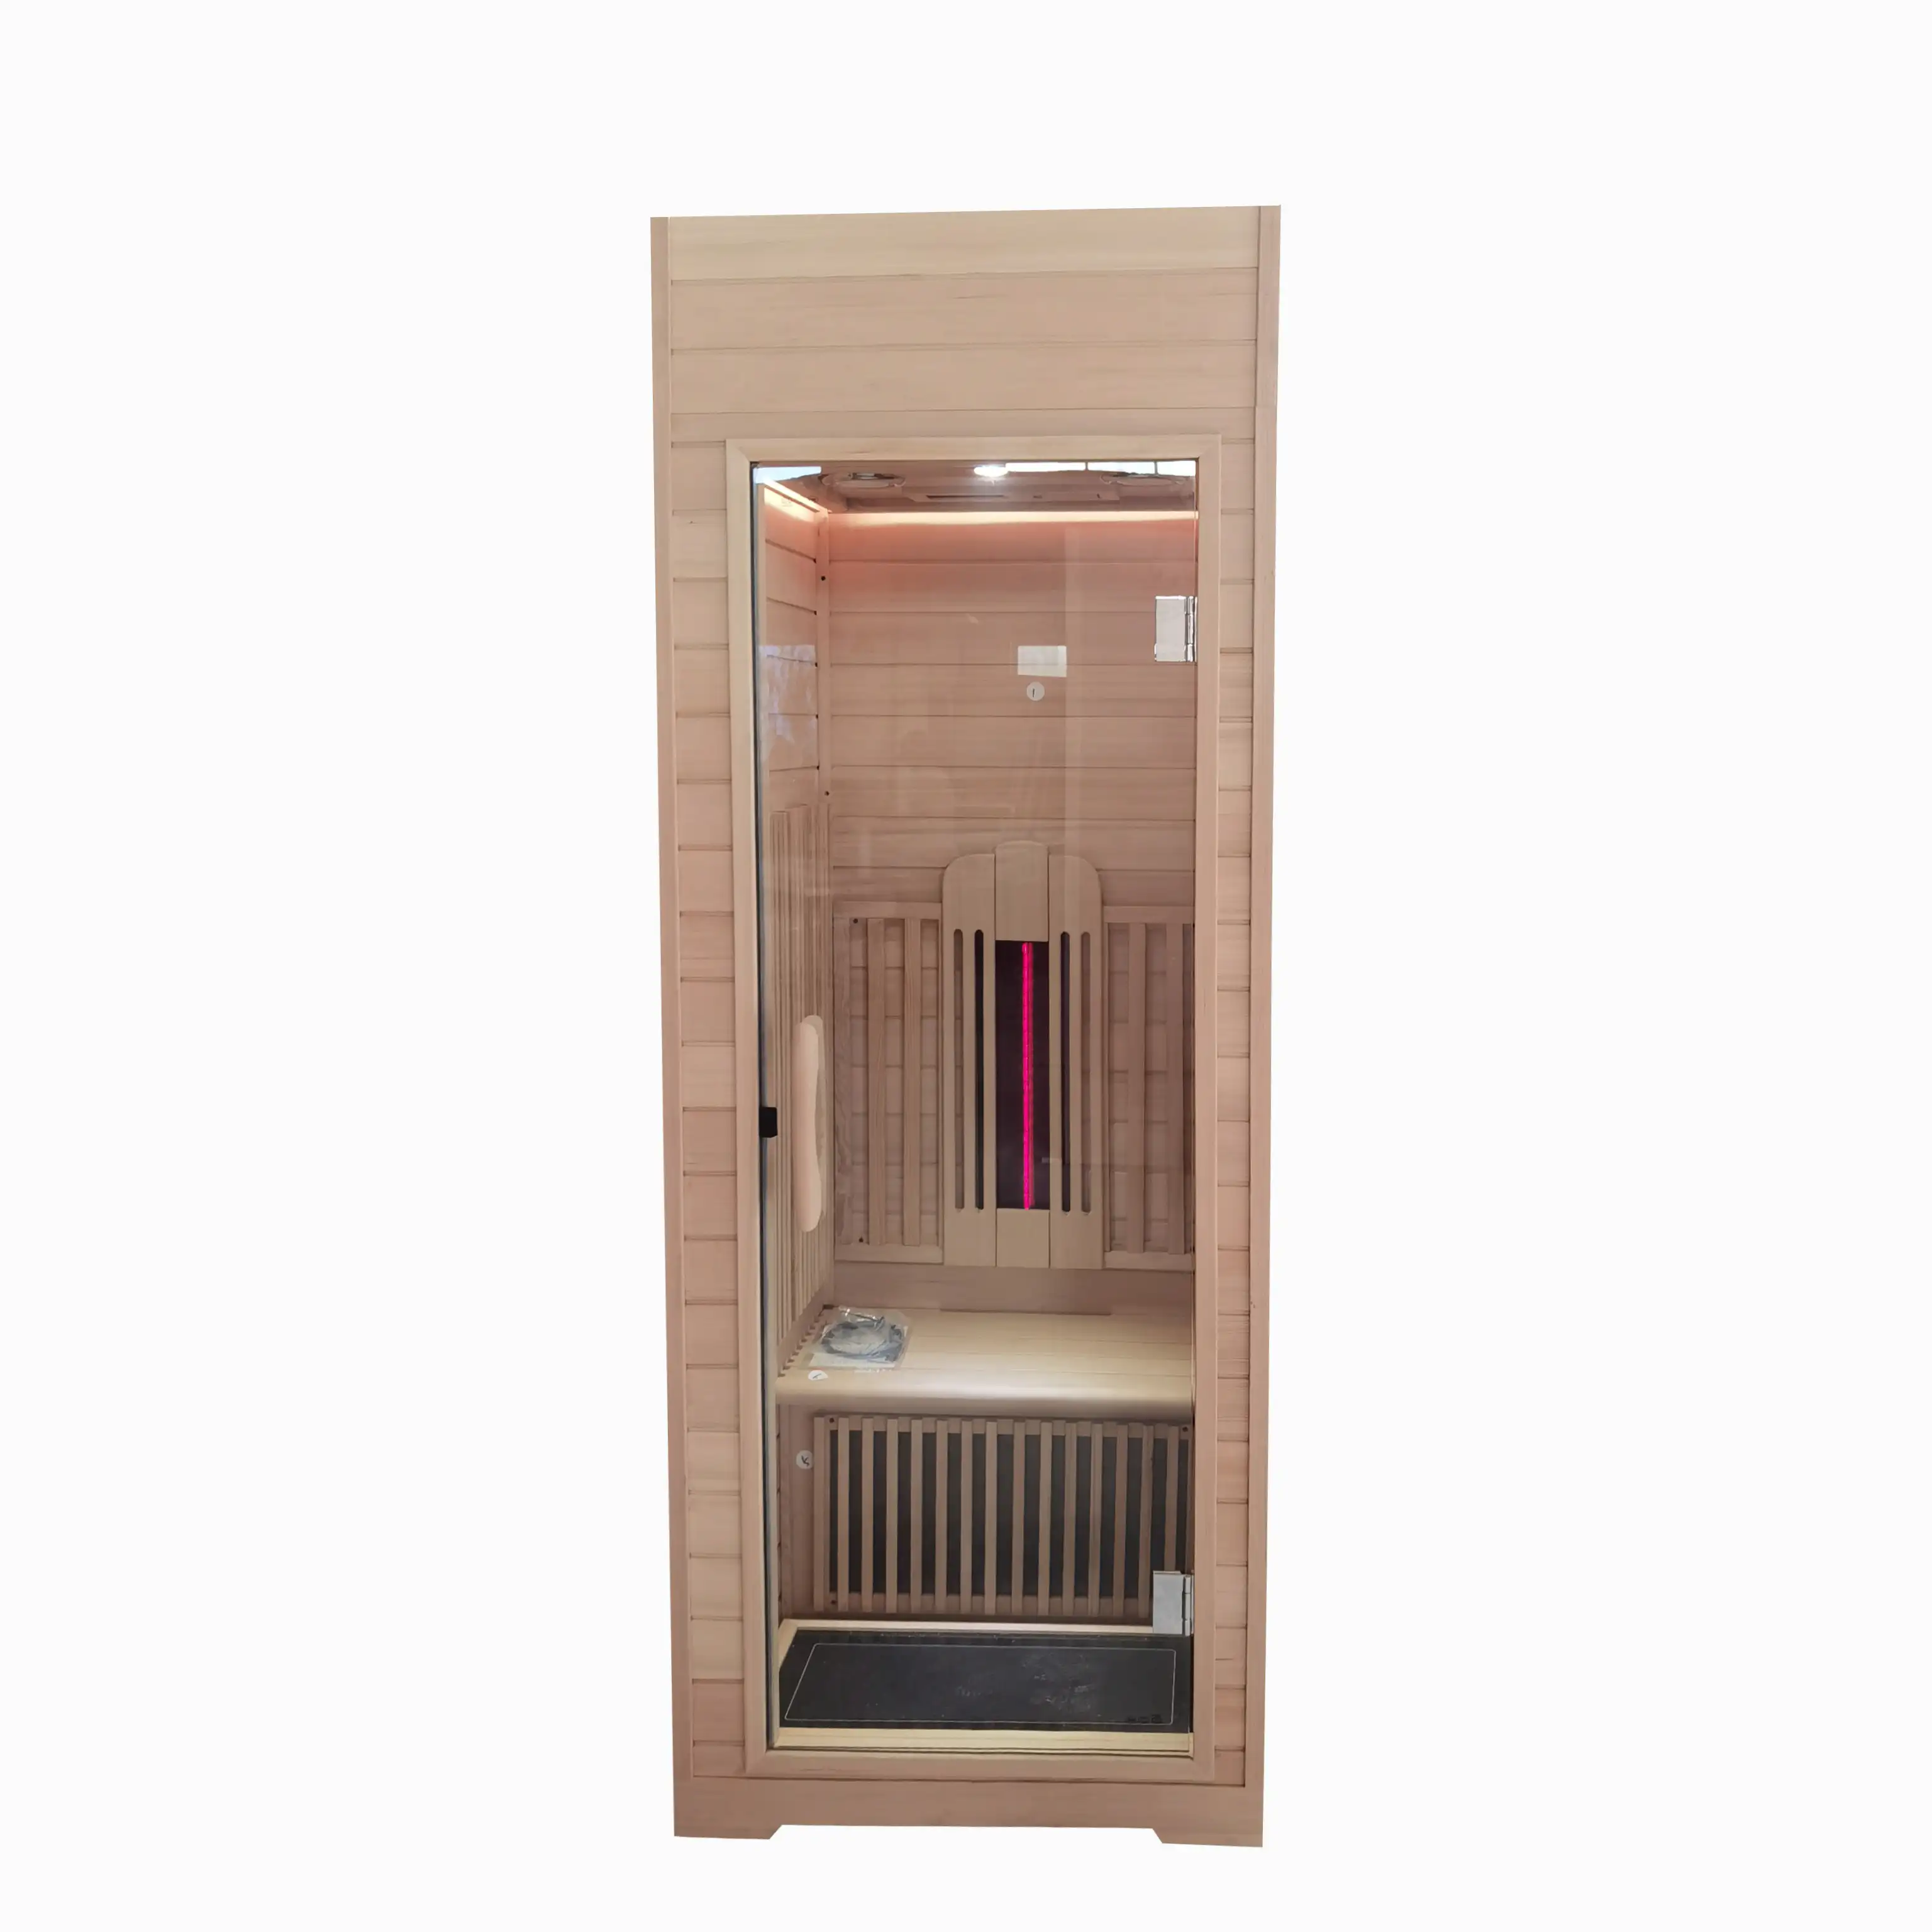 Luxus 1 Einzelperson Sauna kabine Finish Fern infrarot Dampf Innen sauna Raum